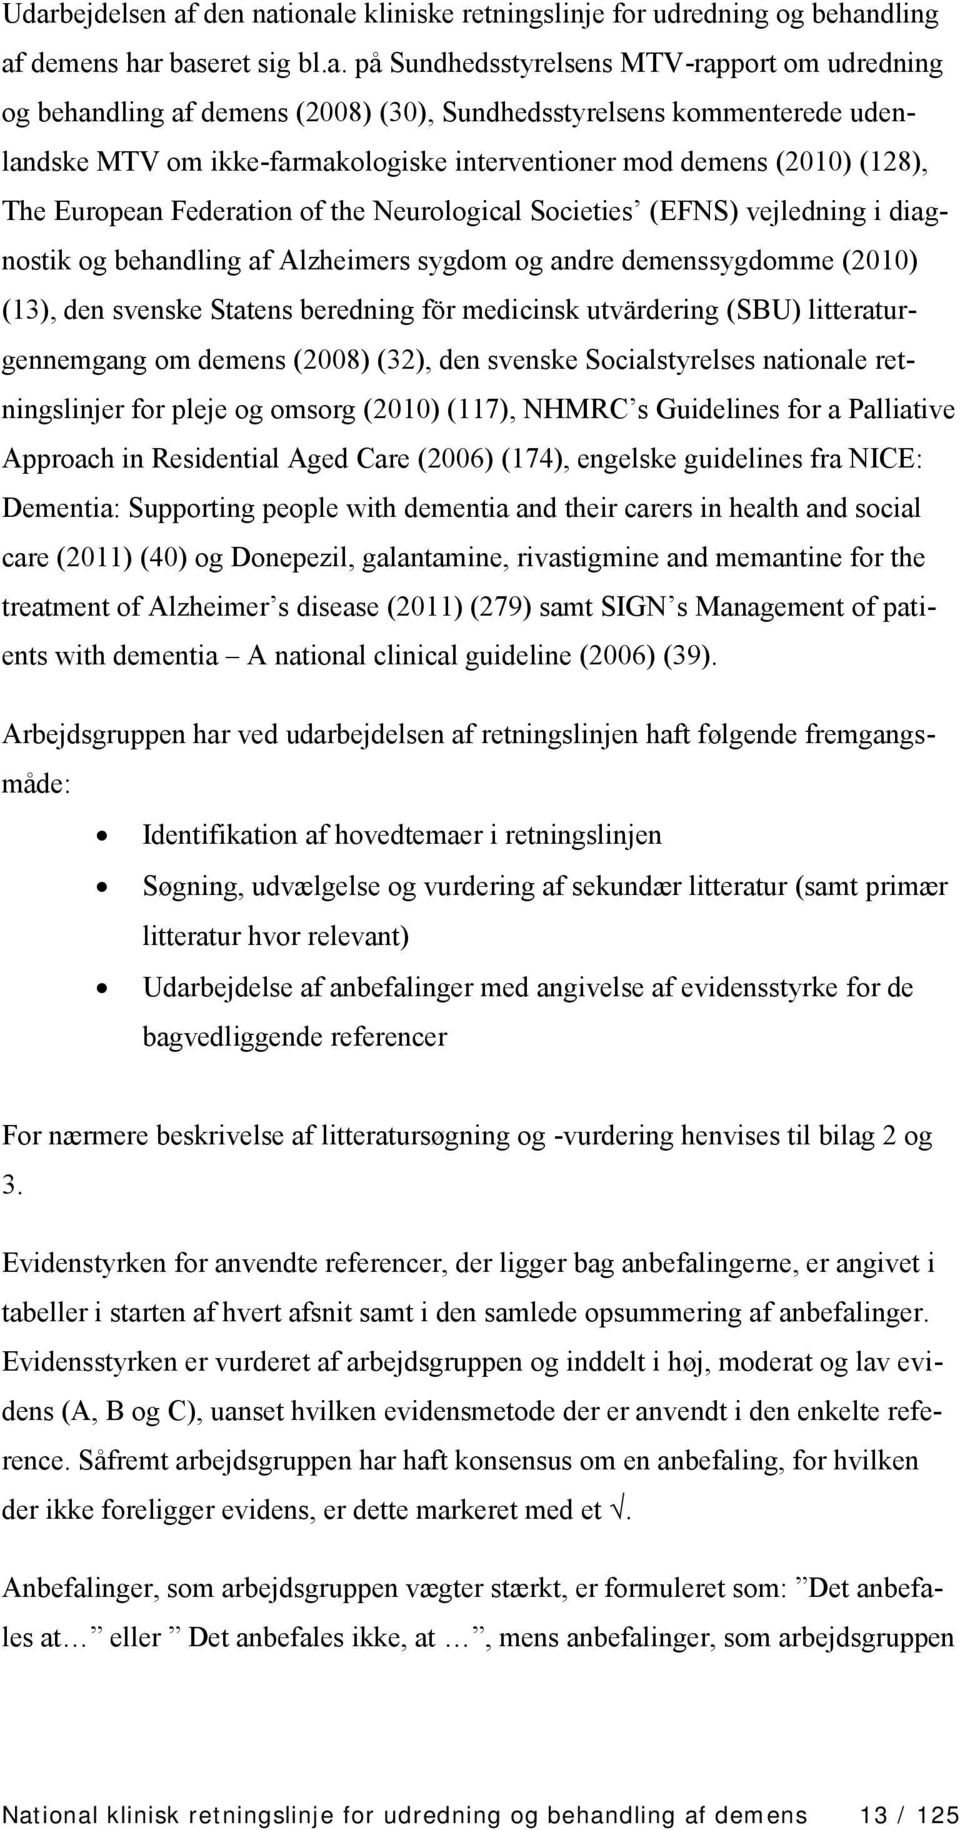 behandling af Alzheimers sygdom og andre demenssygdomme (2010) (13), den svenske Statens beredning för medicinsk utvärdering (SBU) litteraturgennemgang om demens (2008) (32), den svenske